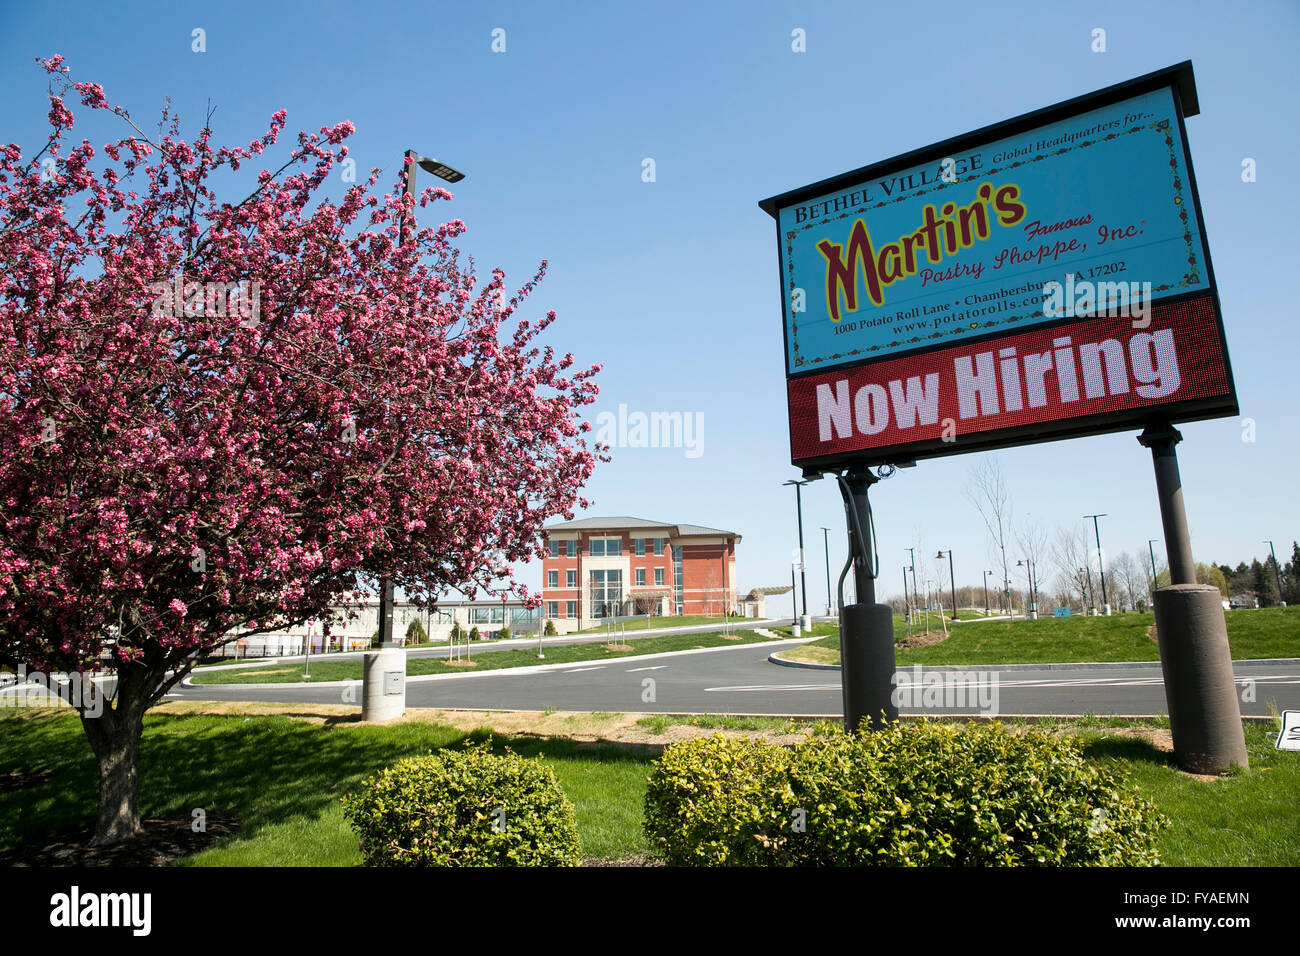 Un logo affiche à l'extérieur du siège de Martin's célèbre pâtisserie Shoppe, Inc., dans la région de Chambersburg, Pennsylvanie, le 17 avril 2016. Banque D'Images